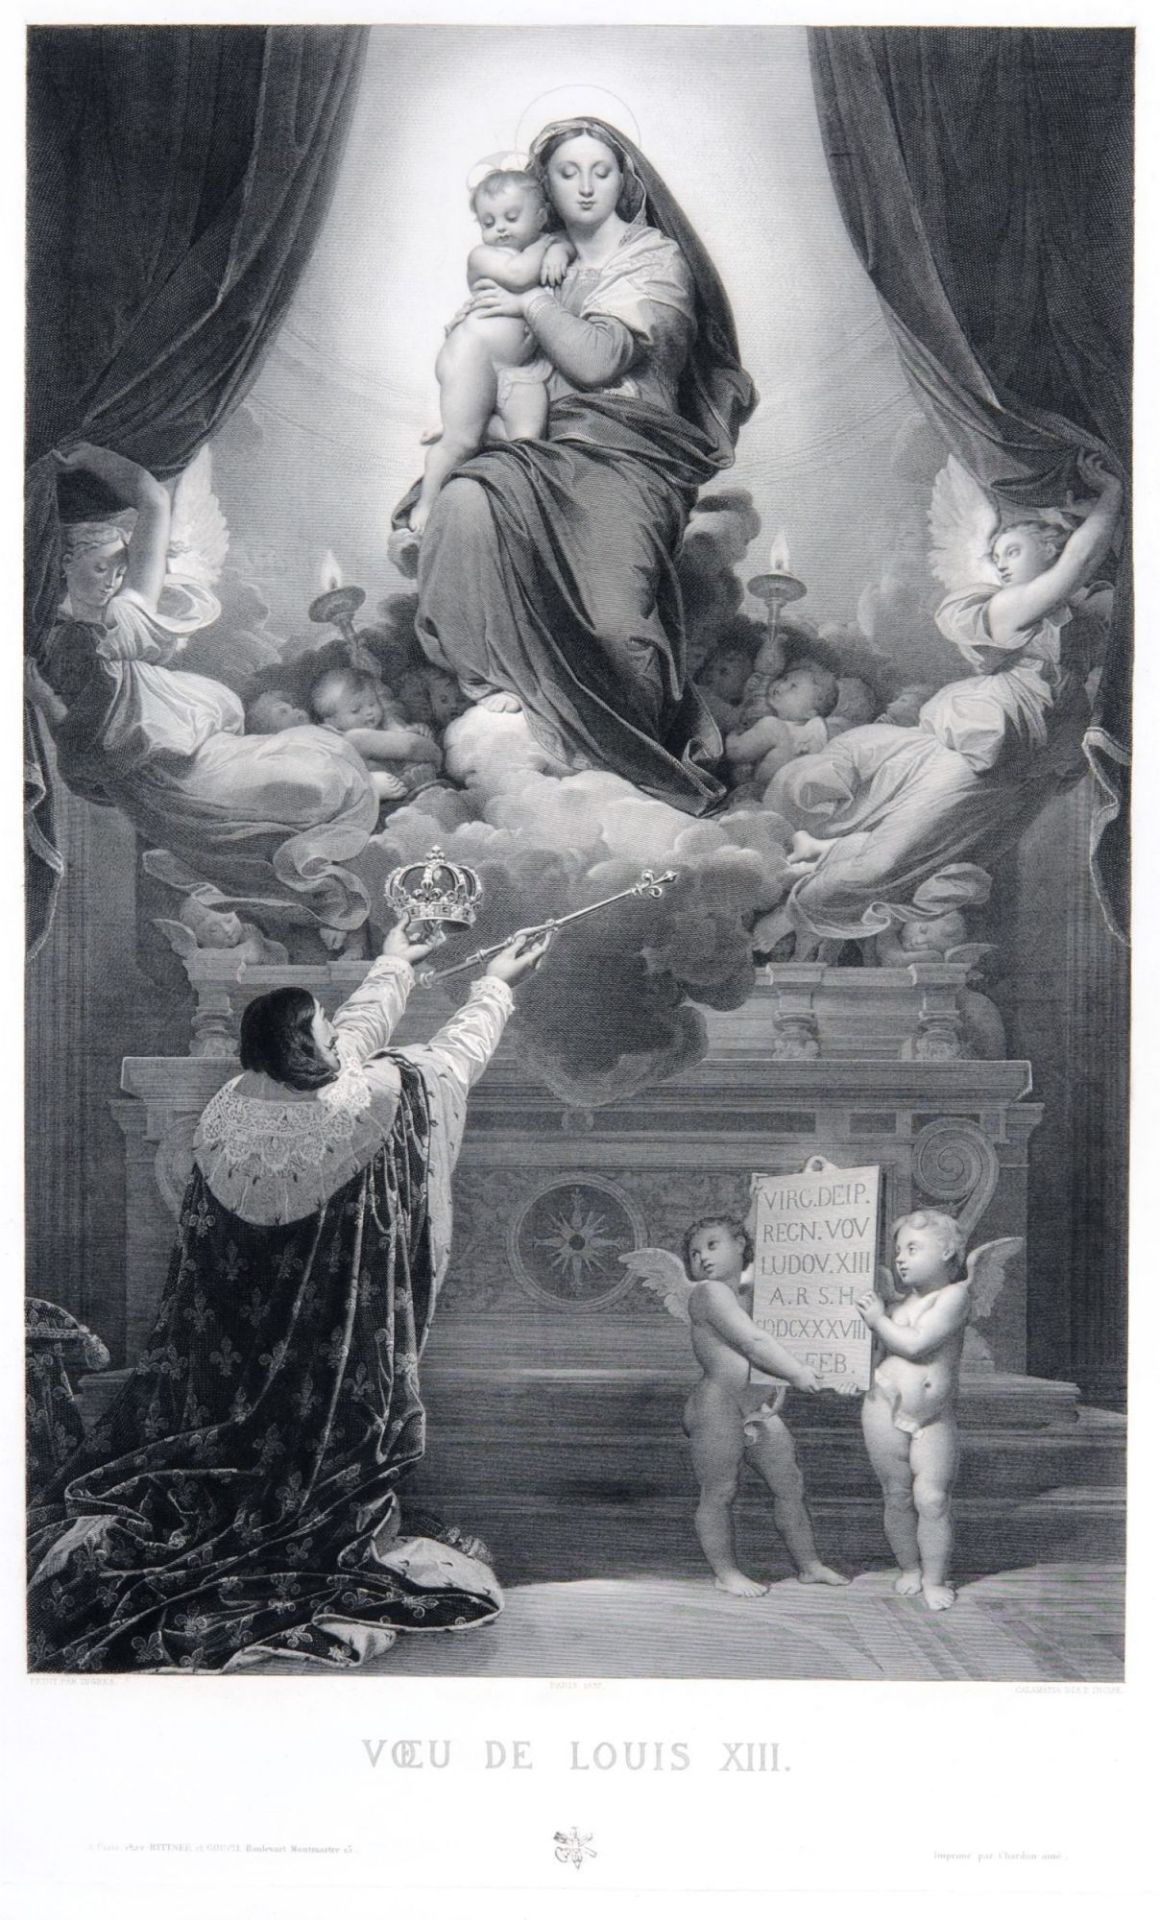 Luigi Calamatta "Voeu de Louis XIII.". 1837.